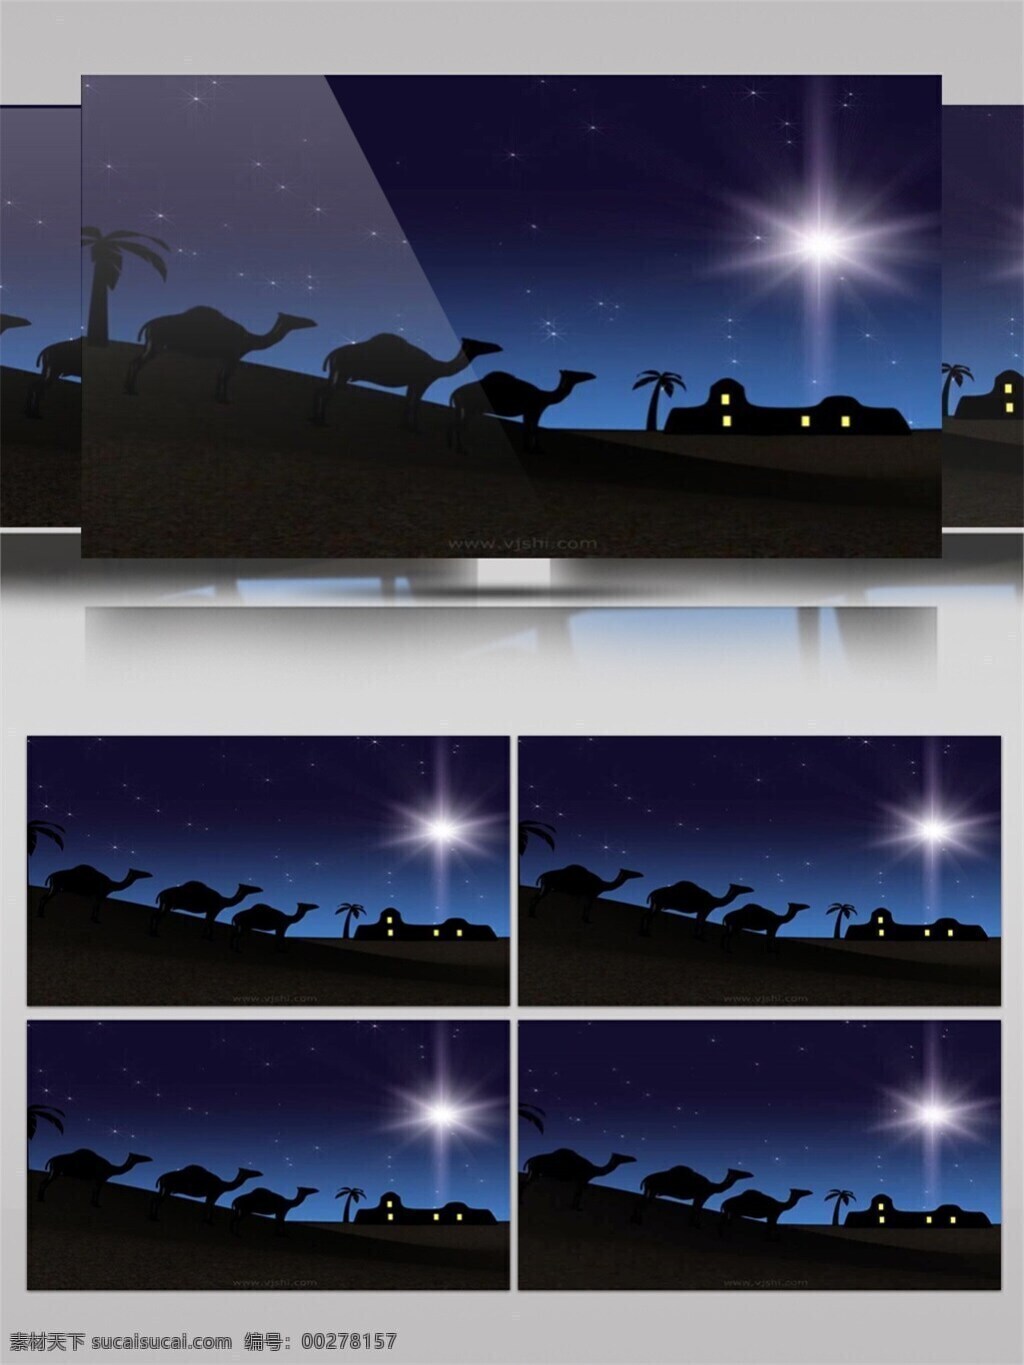 安静 村落 圣诞节 视频 节日壁纸 节日 特效 平安夜 圣诞节庆祝 月下美景